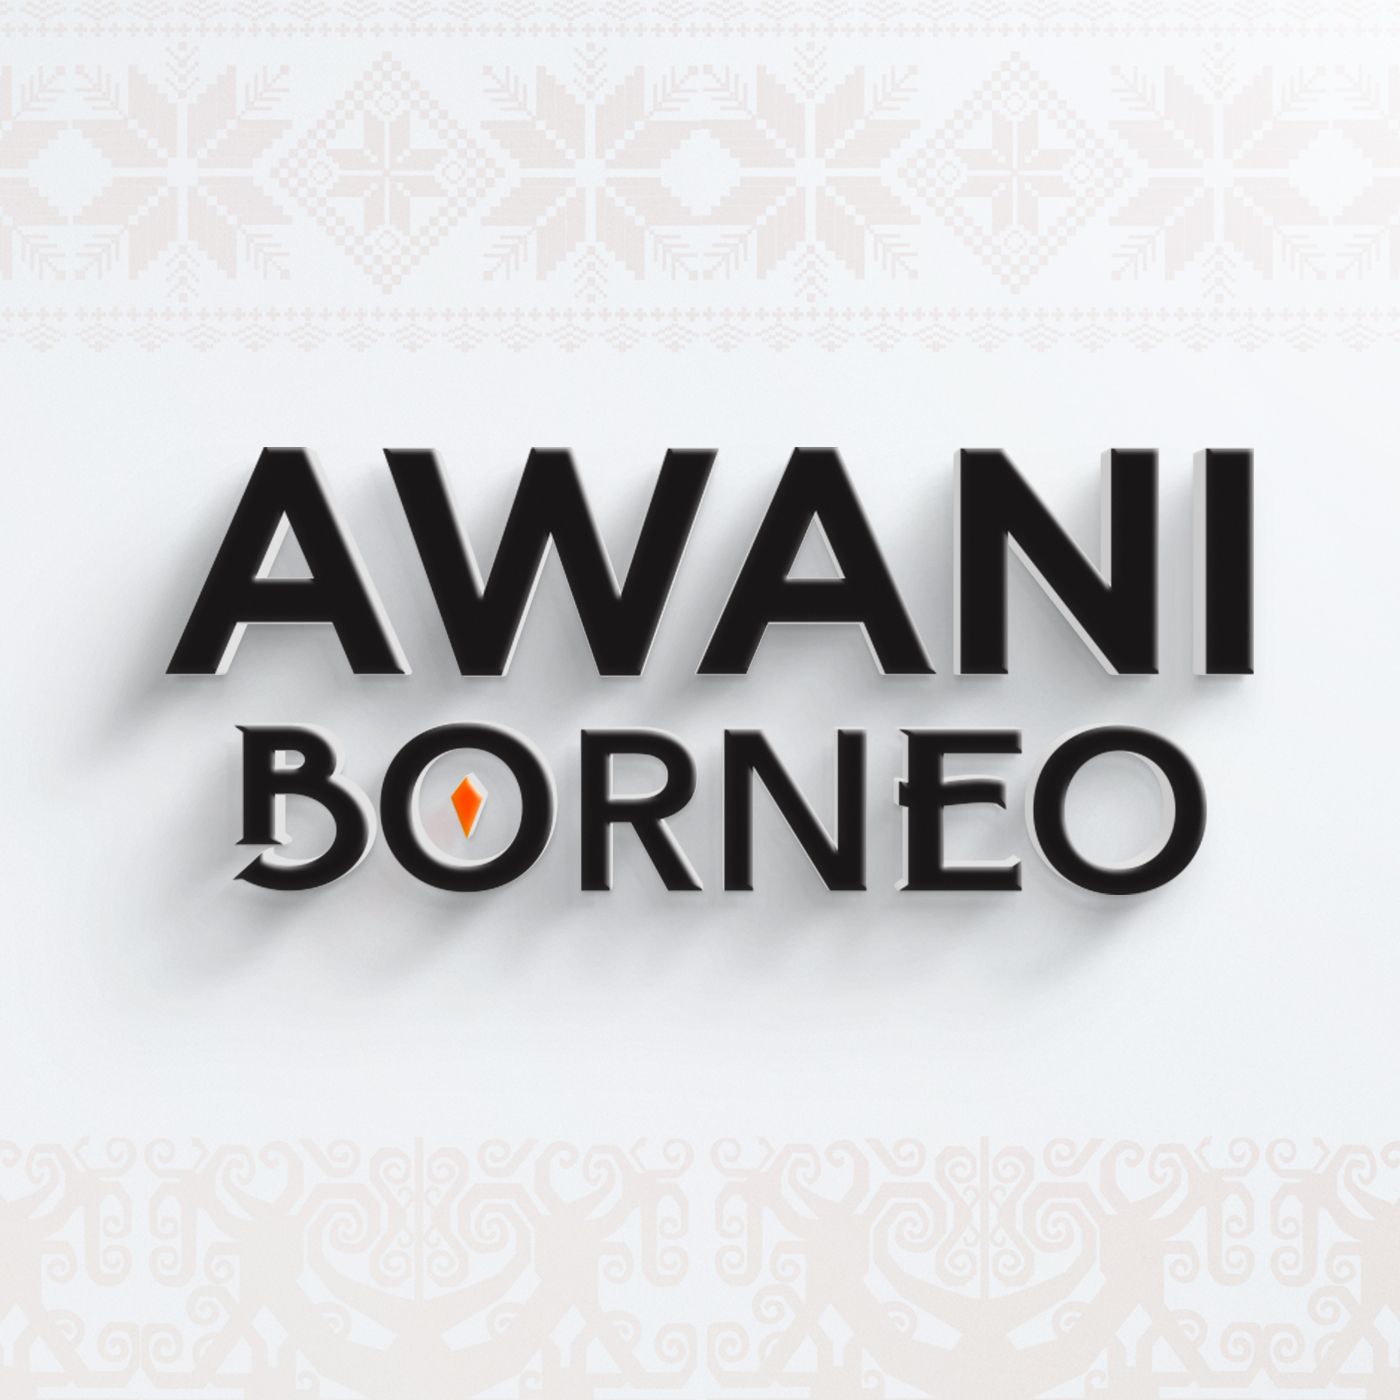 AWANI Borneo [23/01/2022] - Gamit penyertaan wanita dalam politik | Langkah tidak bernoktah